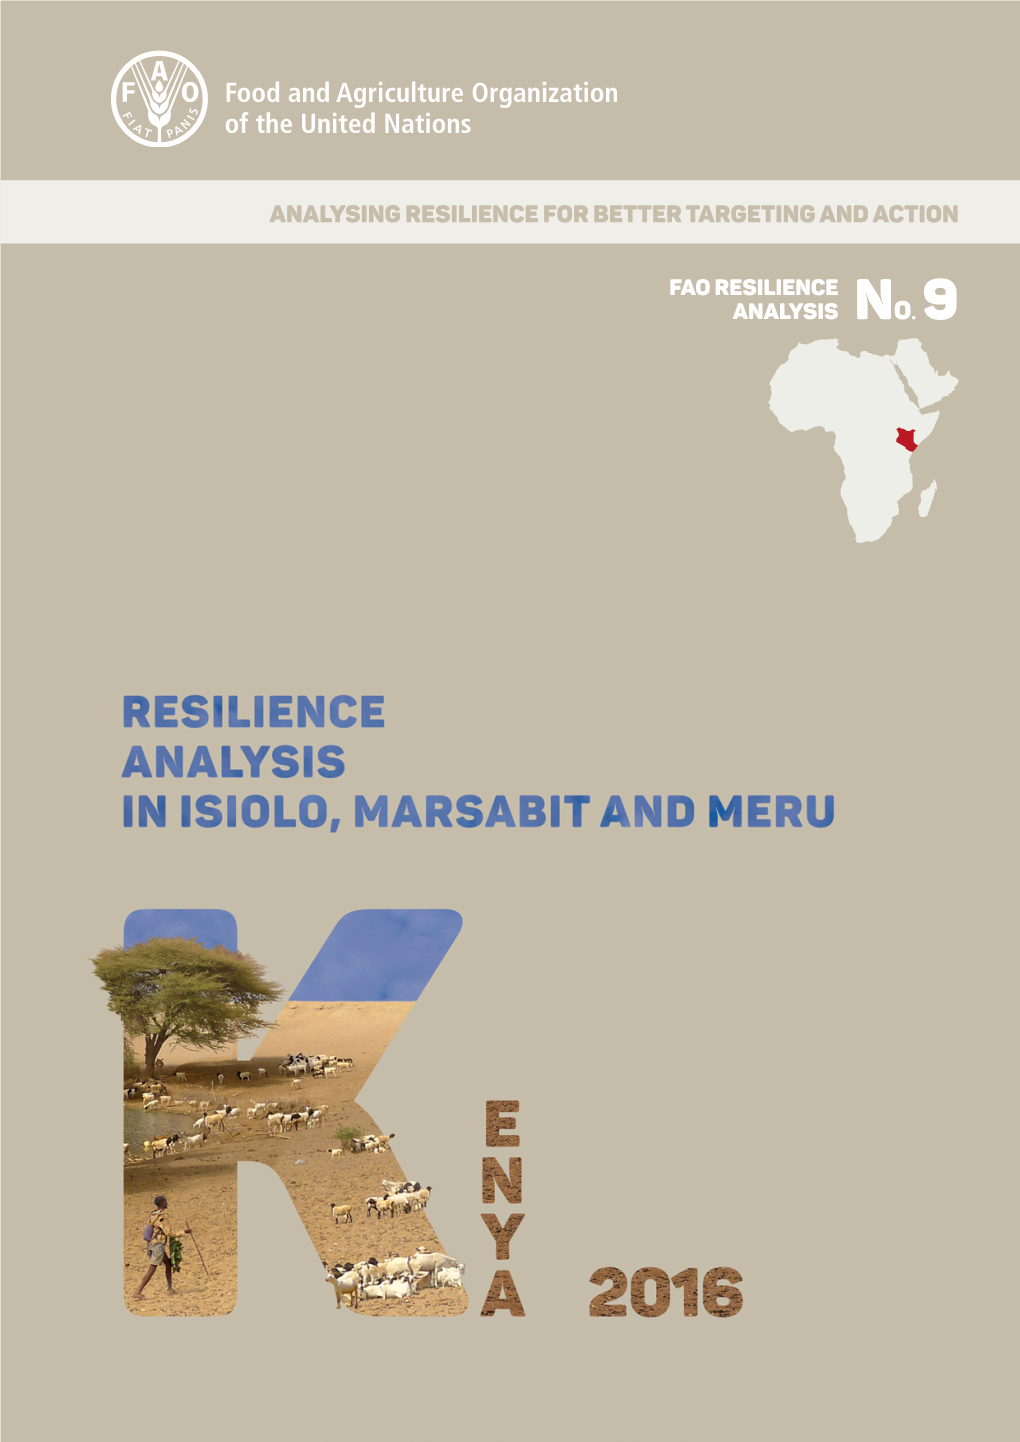 Resilience Analysis in Kenya (Isiolo, Marsabit and Meru)